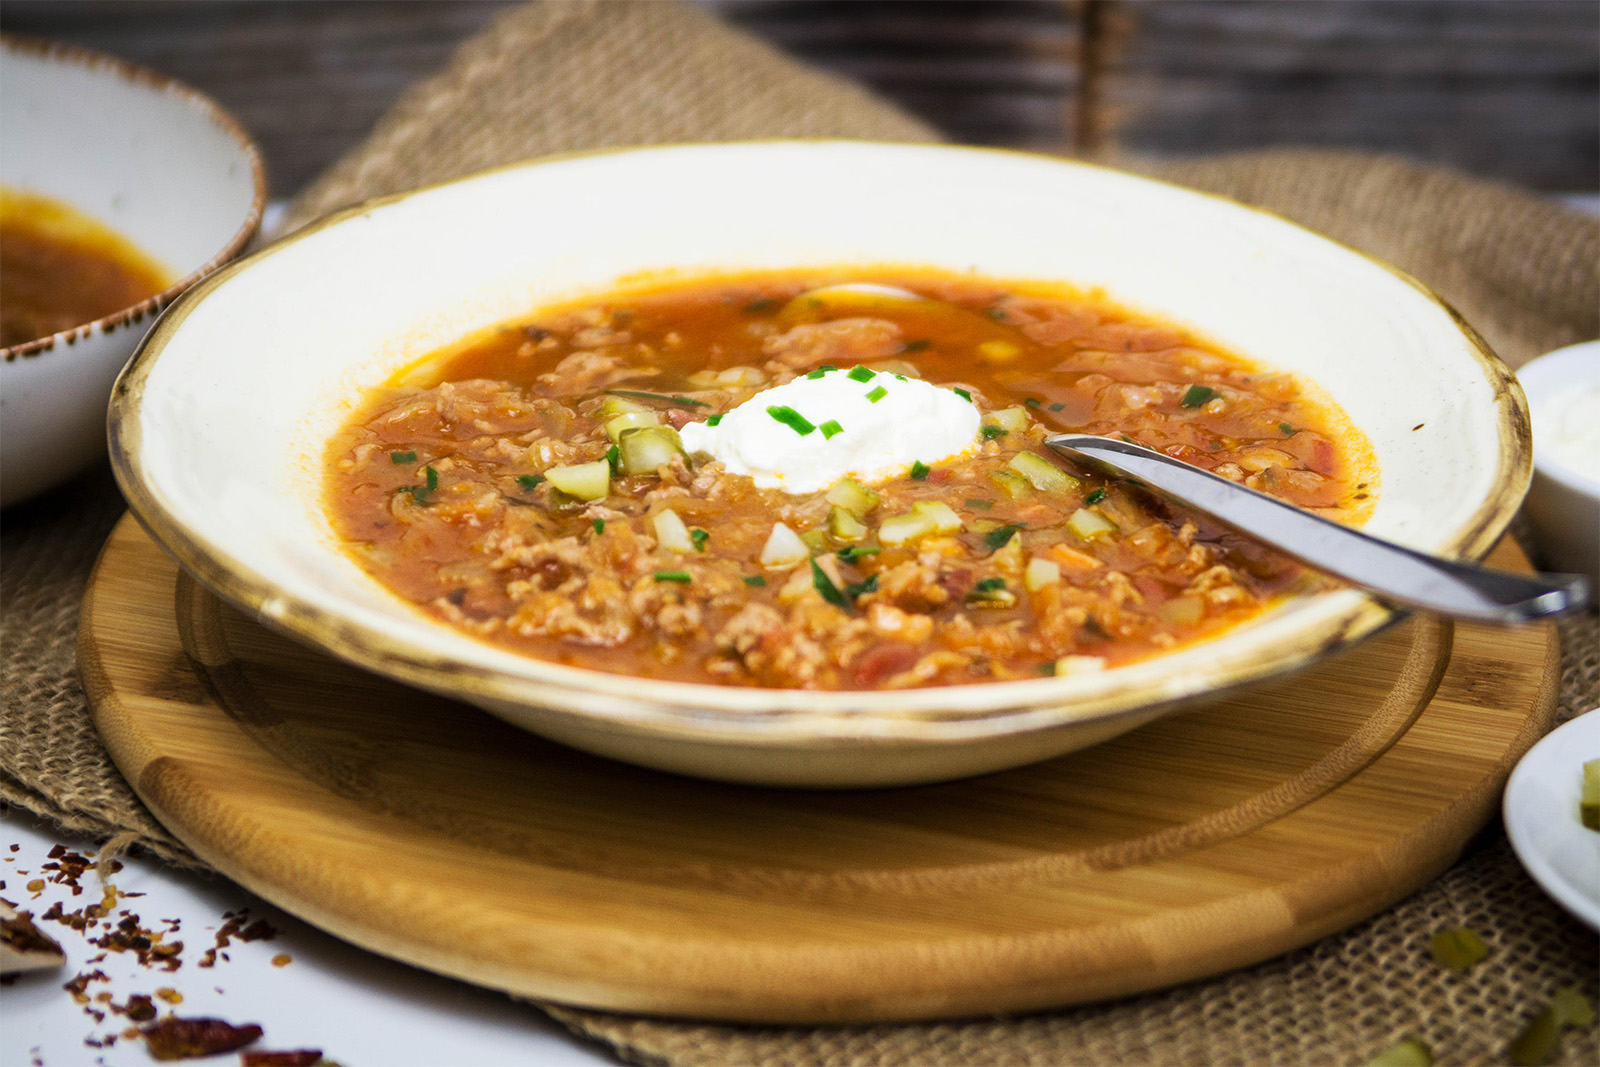 Pikante Sauerkraut-Suppe mit Faschiertem und Tomaten (für Feste geeignet)